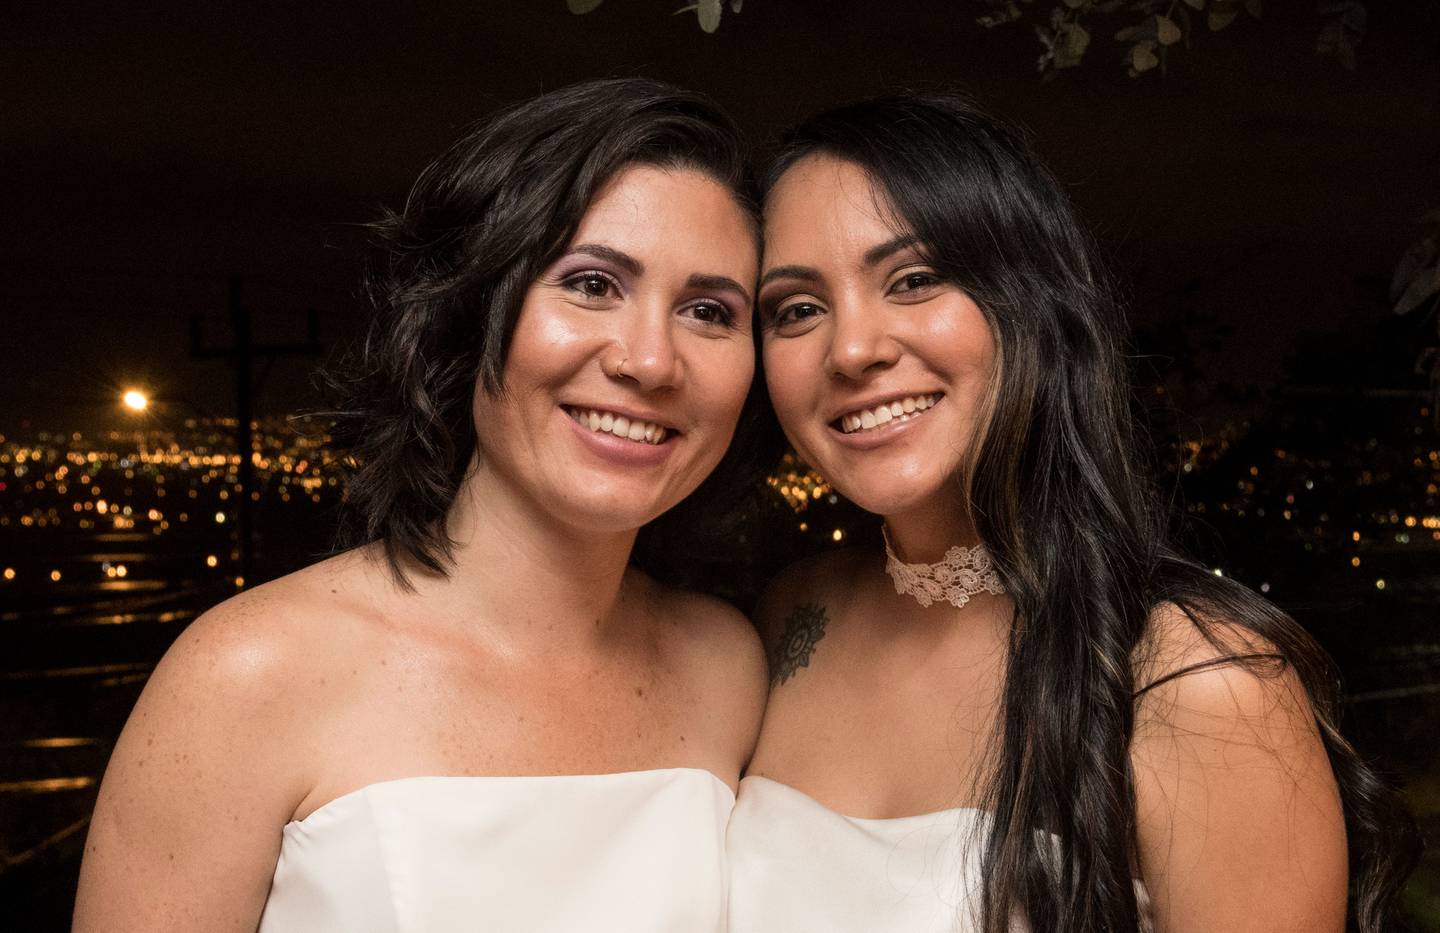 Daritza Araya Arguedas, de 24 años de edad y técnica judicial, se casó con Alexandra Quirós Castillo, una estudiante de 29 años, este 26 de mayo, a las 0 horas con 10 minutos, convirtiéndose así en la primera pareja del mismo sexo que se casa civilmente en Costa Rica.